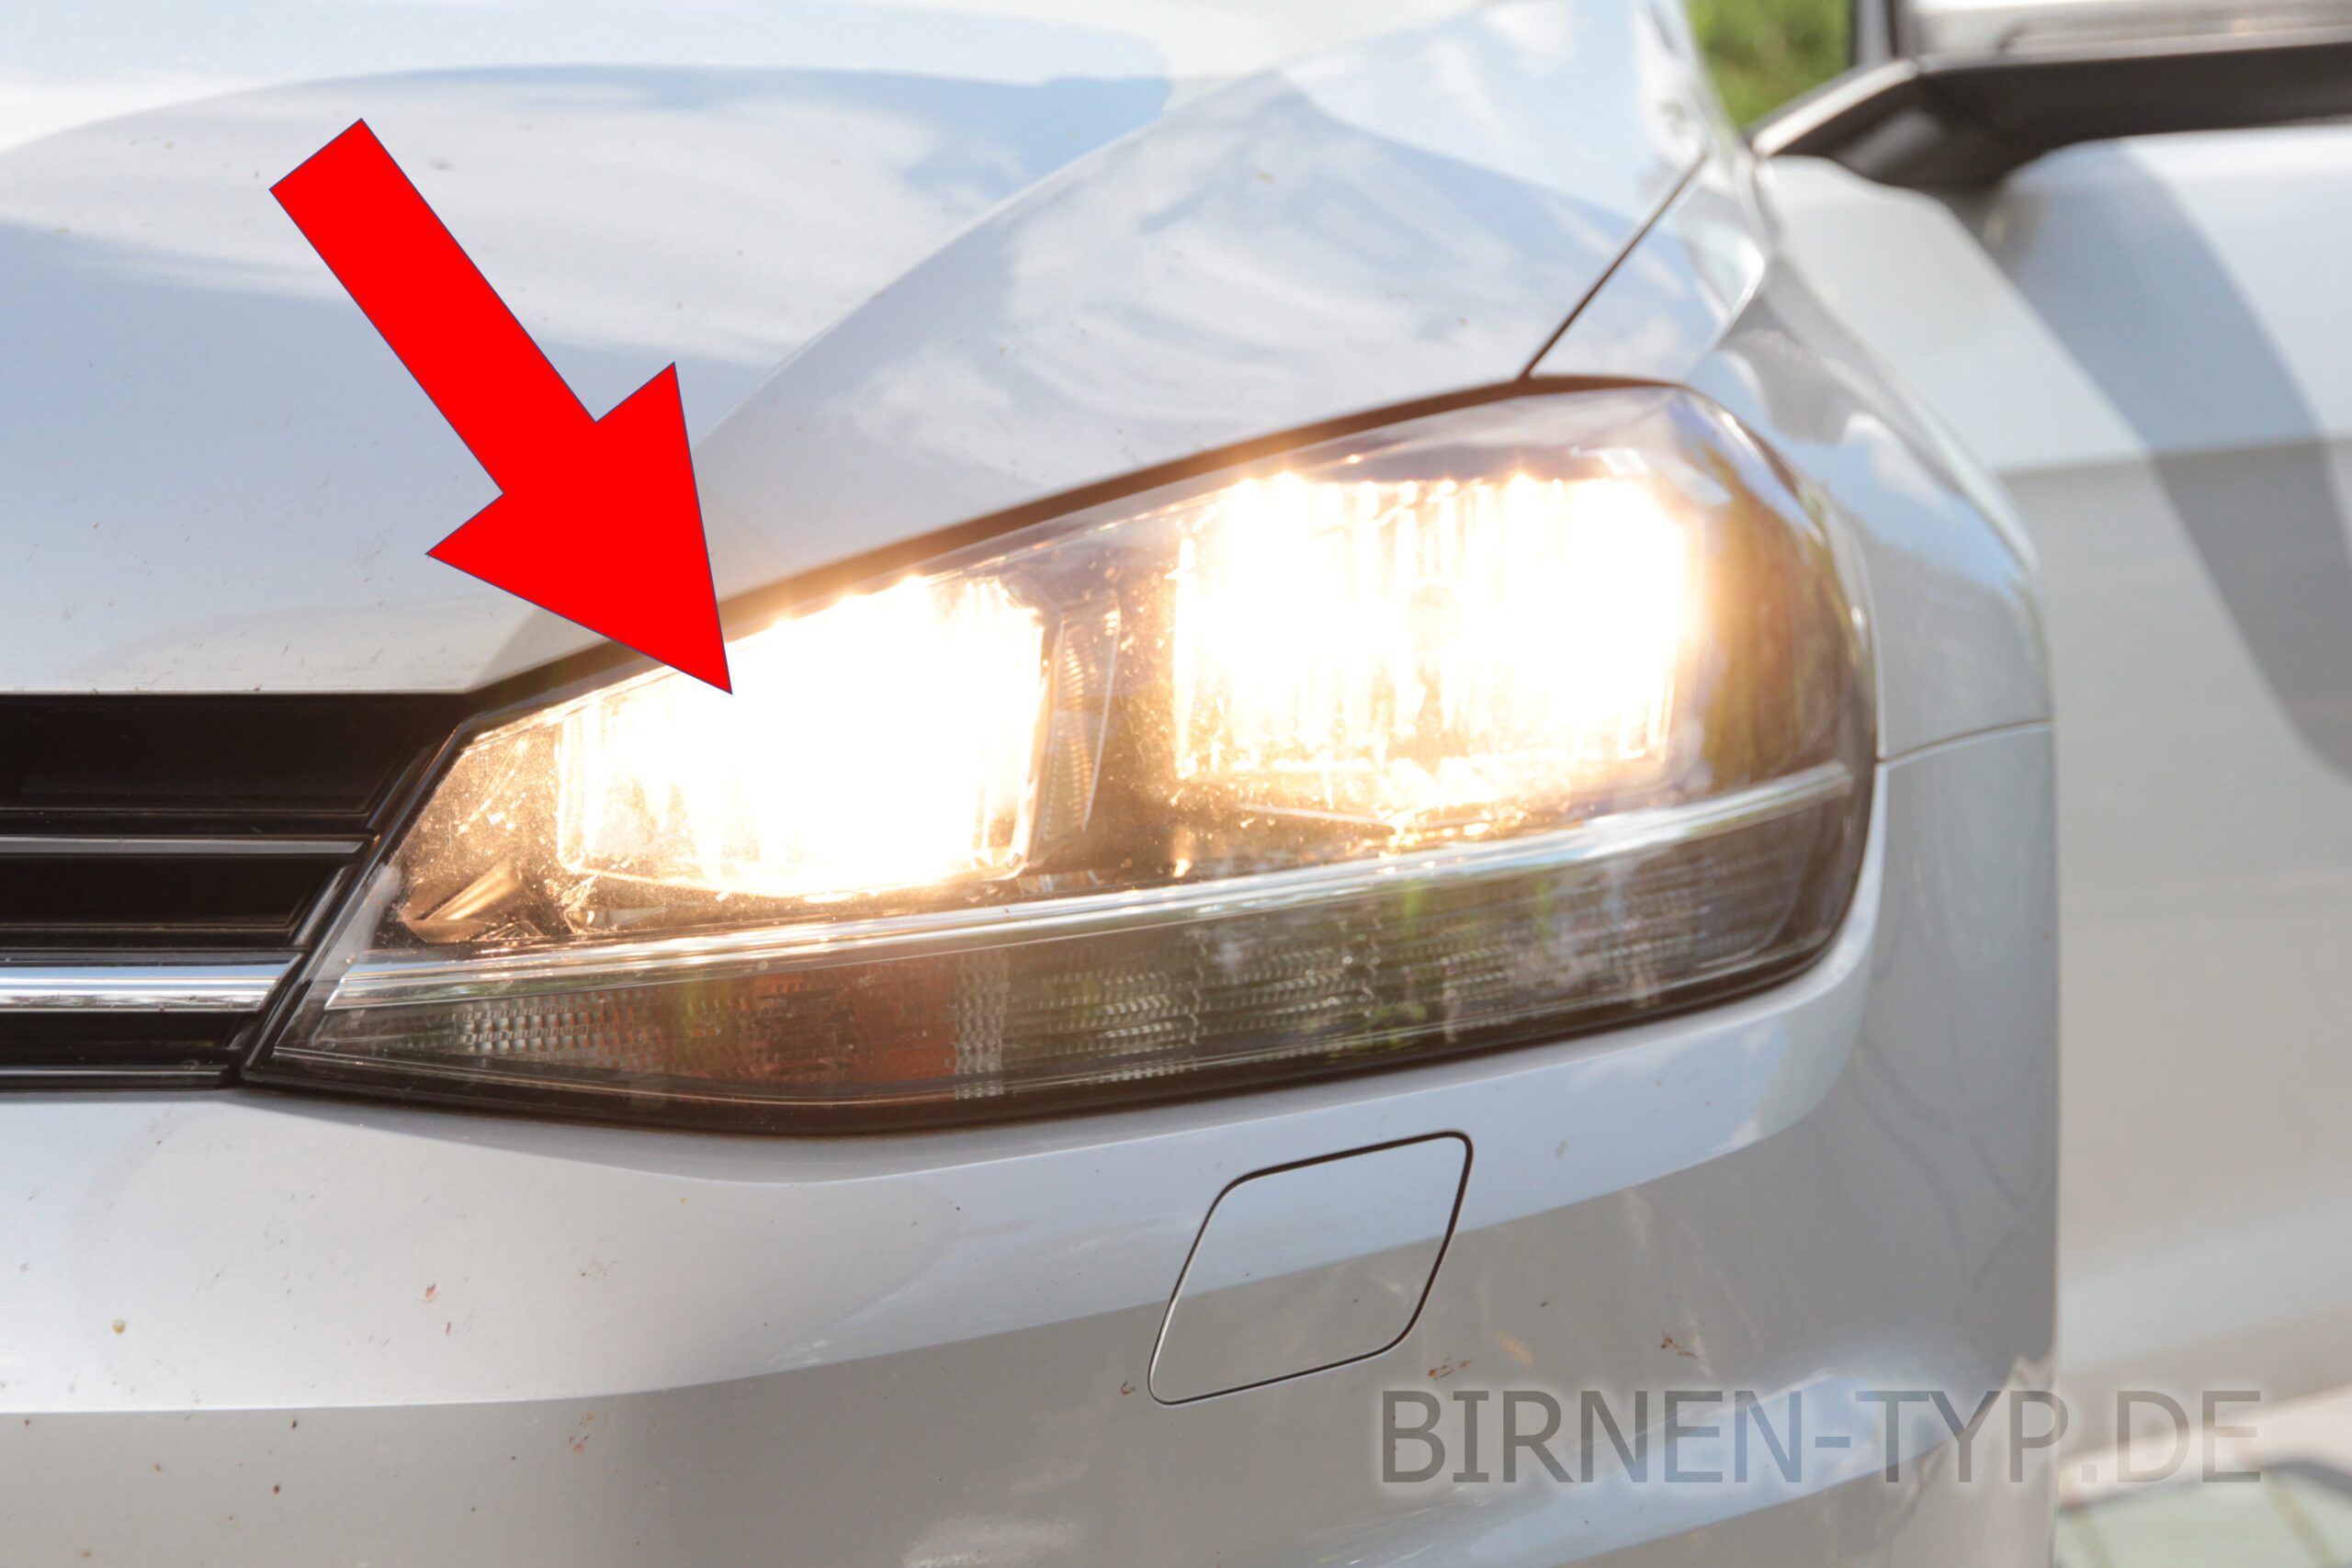 VW Golf 7 Scheinwerfer Birne wechseln (Halogen) [headlights bulb